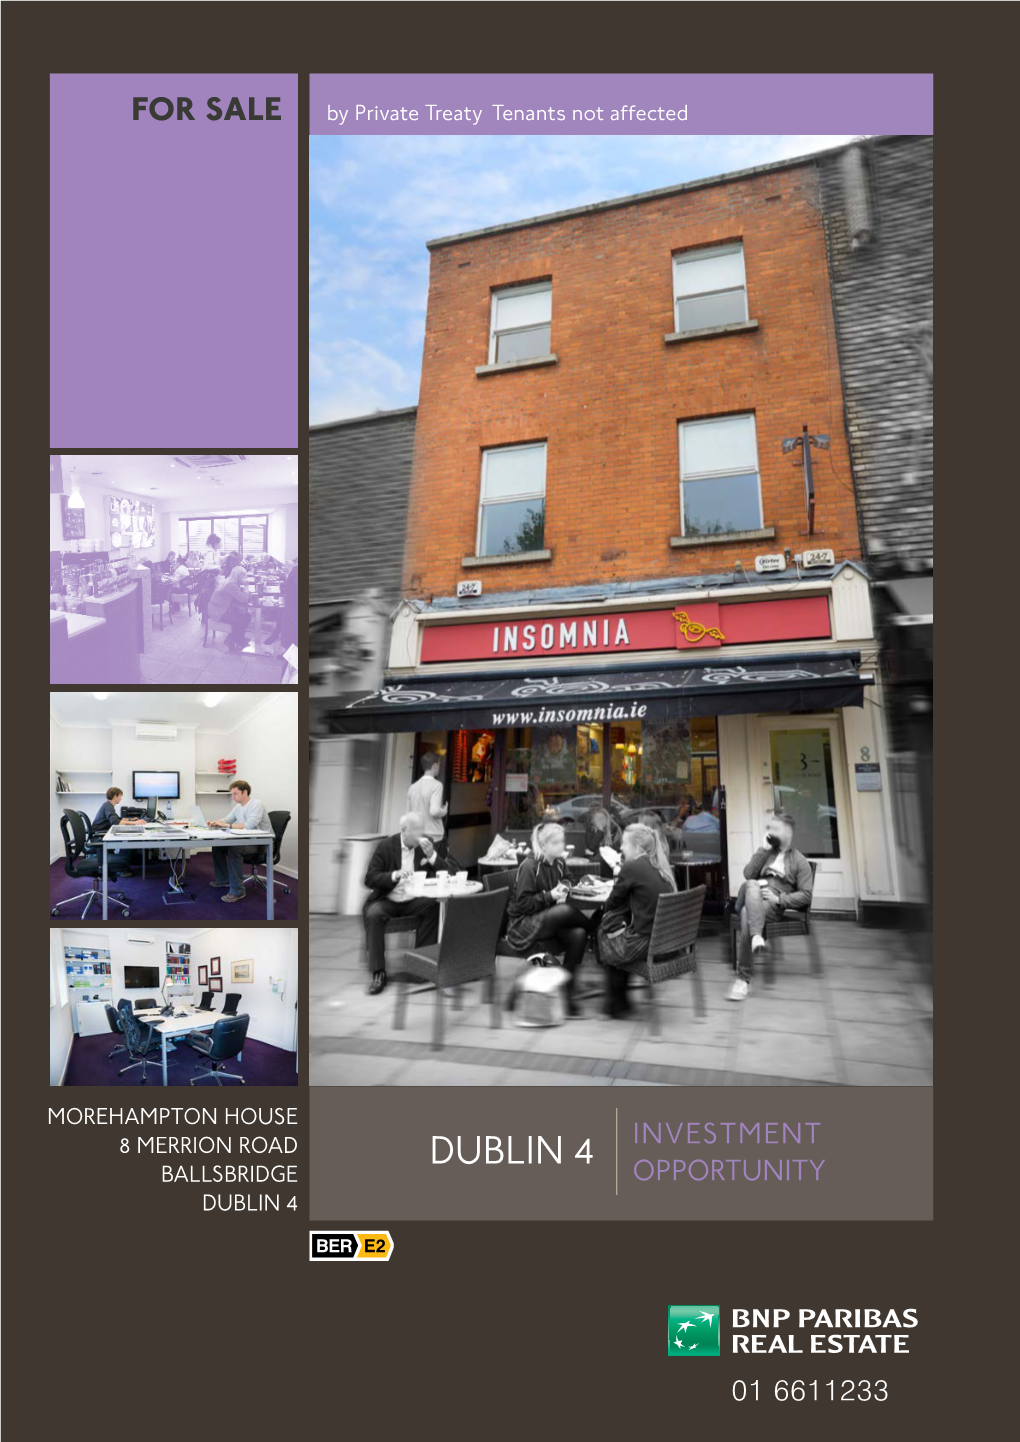 Dublin 4 Investment Ballsbridge Opportunity Dublin 4